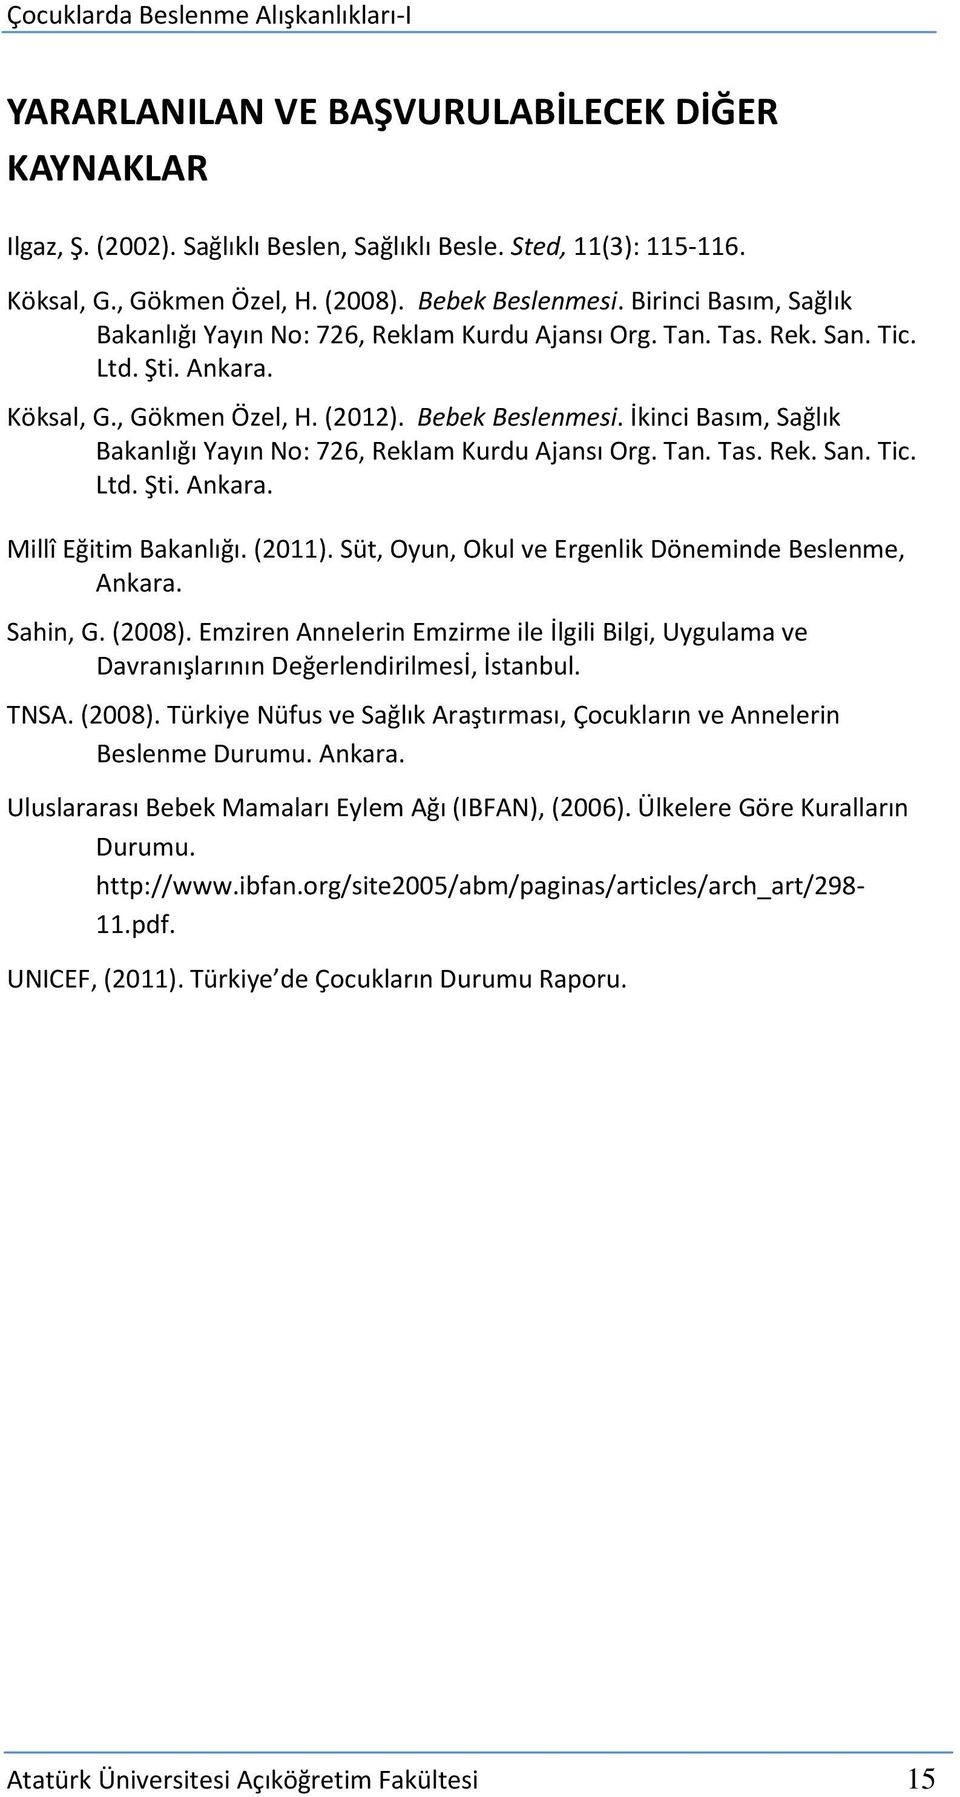 İkinci Basım, Sağlık Bakanlığı Yayın No: 726, Reklam Kurdu Ajansı Org. Tan. Tas. Rek. San. Tic. Ltd. Şti. Ankara. Millî Eğitim Bakanlığı. (2011).